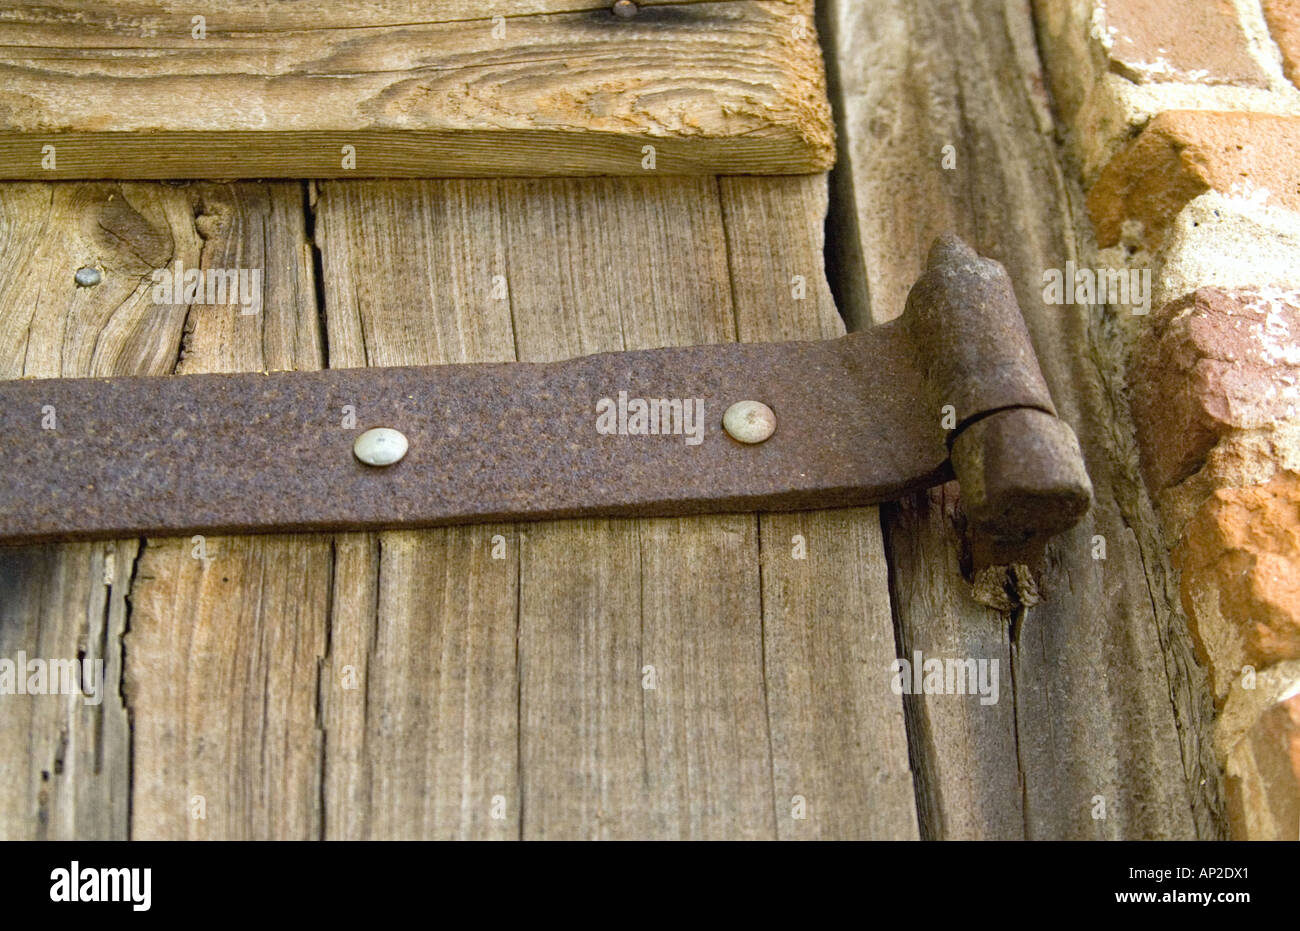 Antique door hinge Stock Photo - Alamy